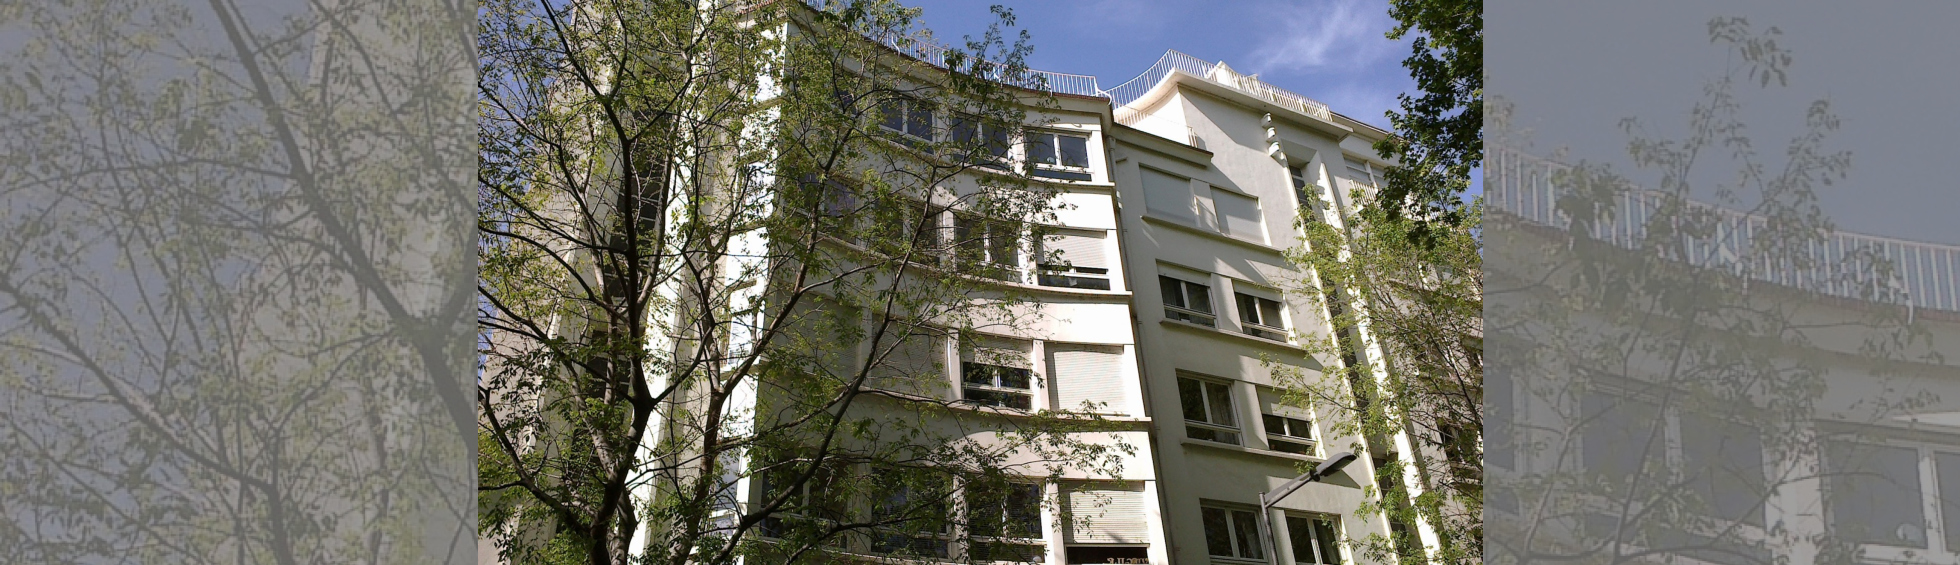 Square House, demeure et agence de Férid Muchir, 1951 et 1959, 10-11 boulevard Jean Bourrat.